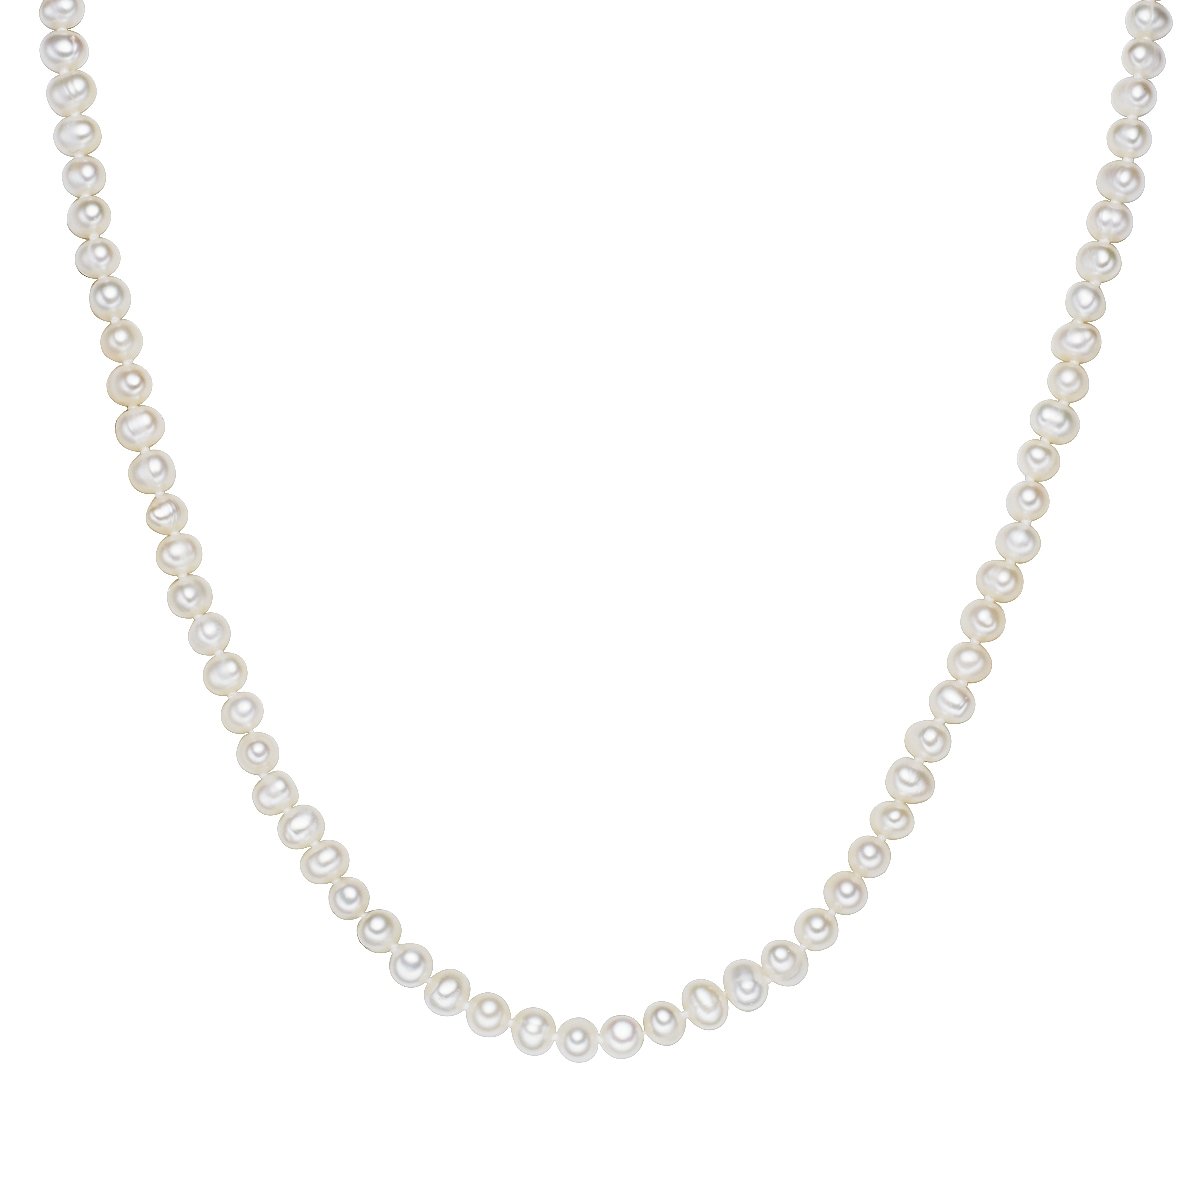 Valero Pearls Damen-Kette Hochwertige Süßwasser-Zuchtperlen in ca. 6 mm Oval weiß 120 cm - Perlenkette Halskette mit echten Perlen 340201